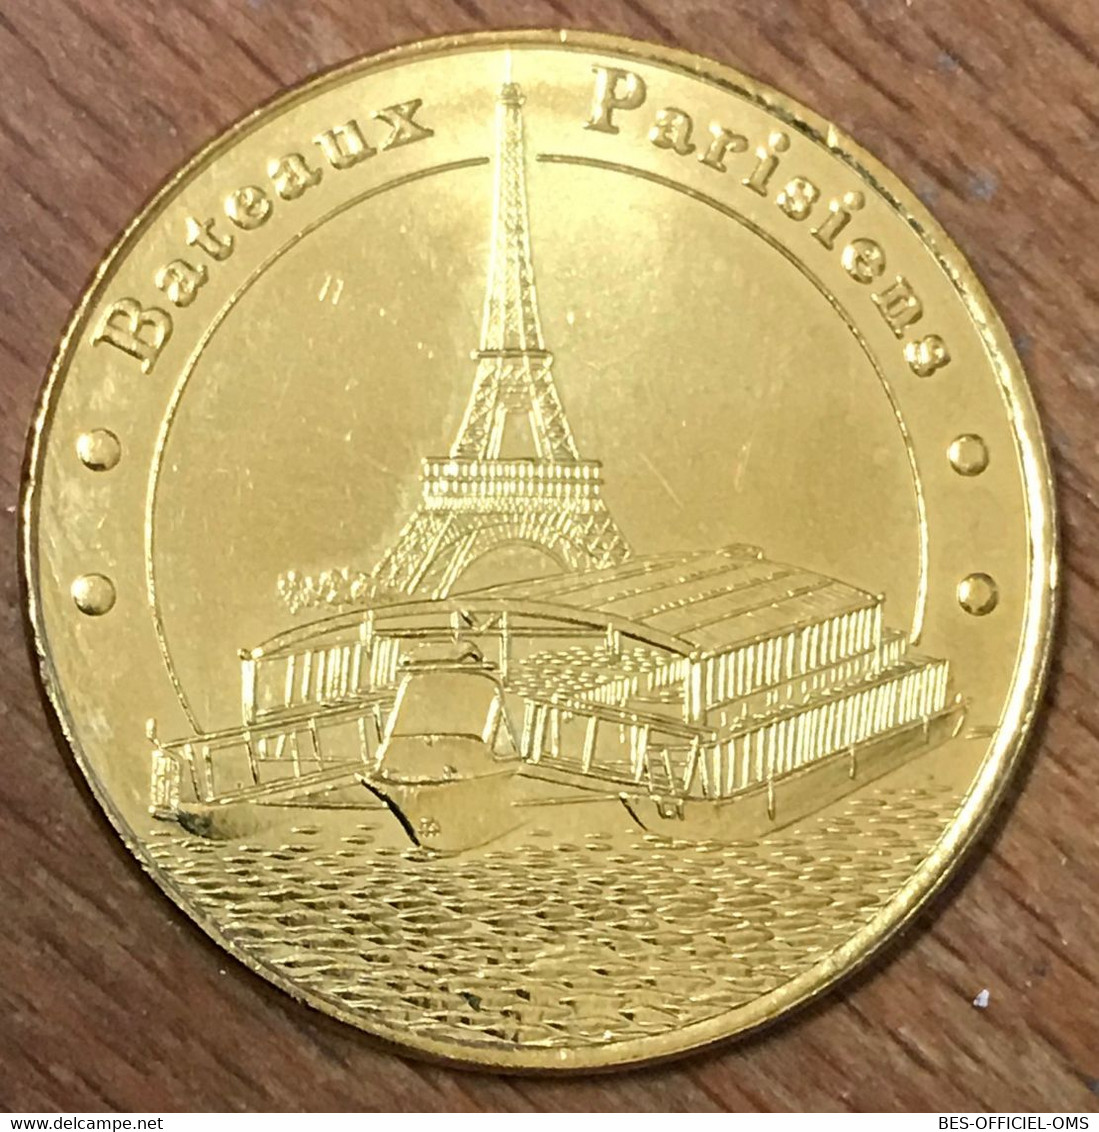 75007 PARIS BATEAUX PARISIENS 2018 MDP MEDAILLE SOUVENIR MONNAIE DE PARIS JETON TOURISTIQUE MEDALS COINS TOKENS - 2018